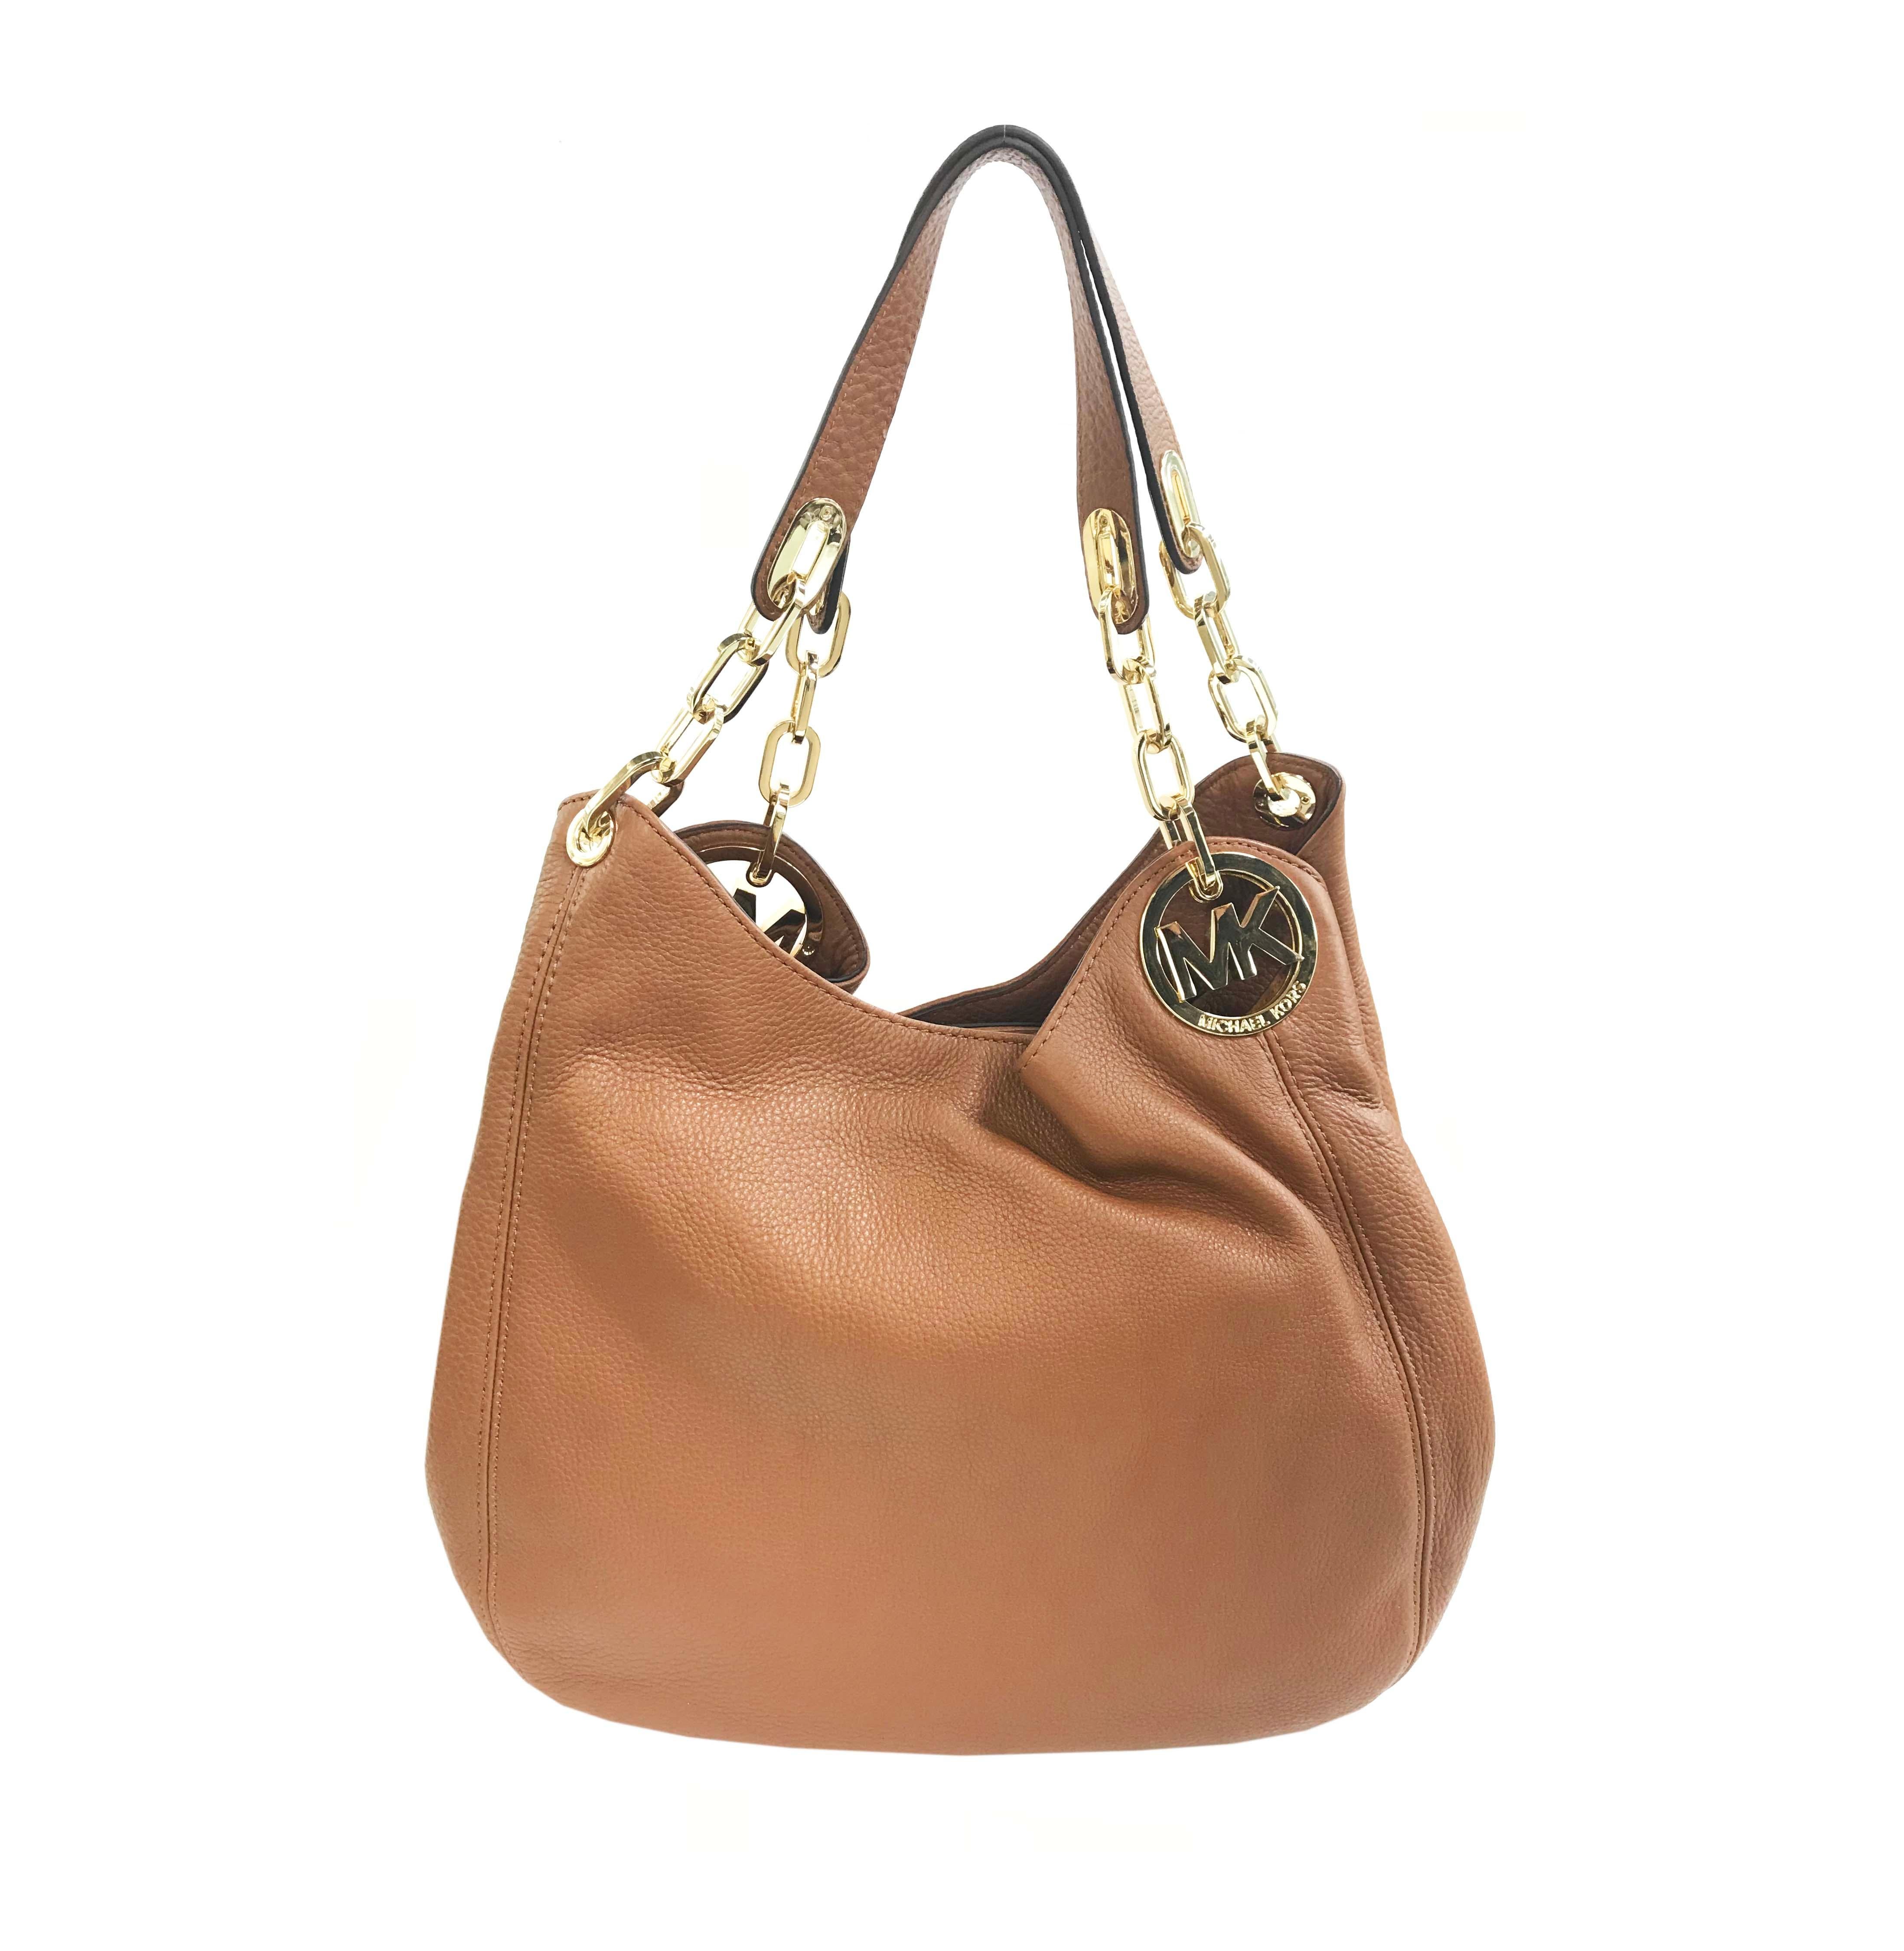 brown leather michael kors handbag